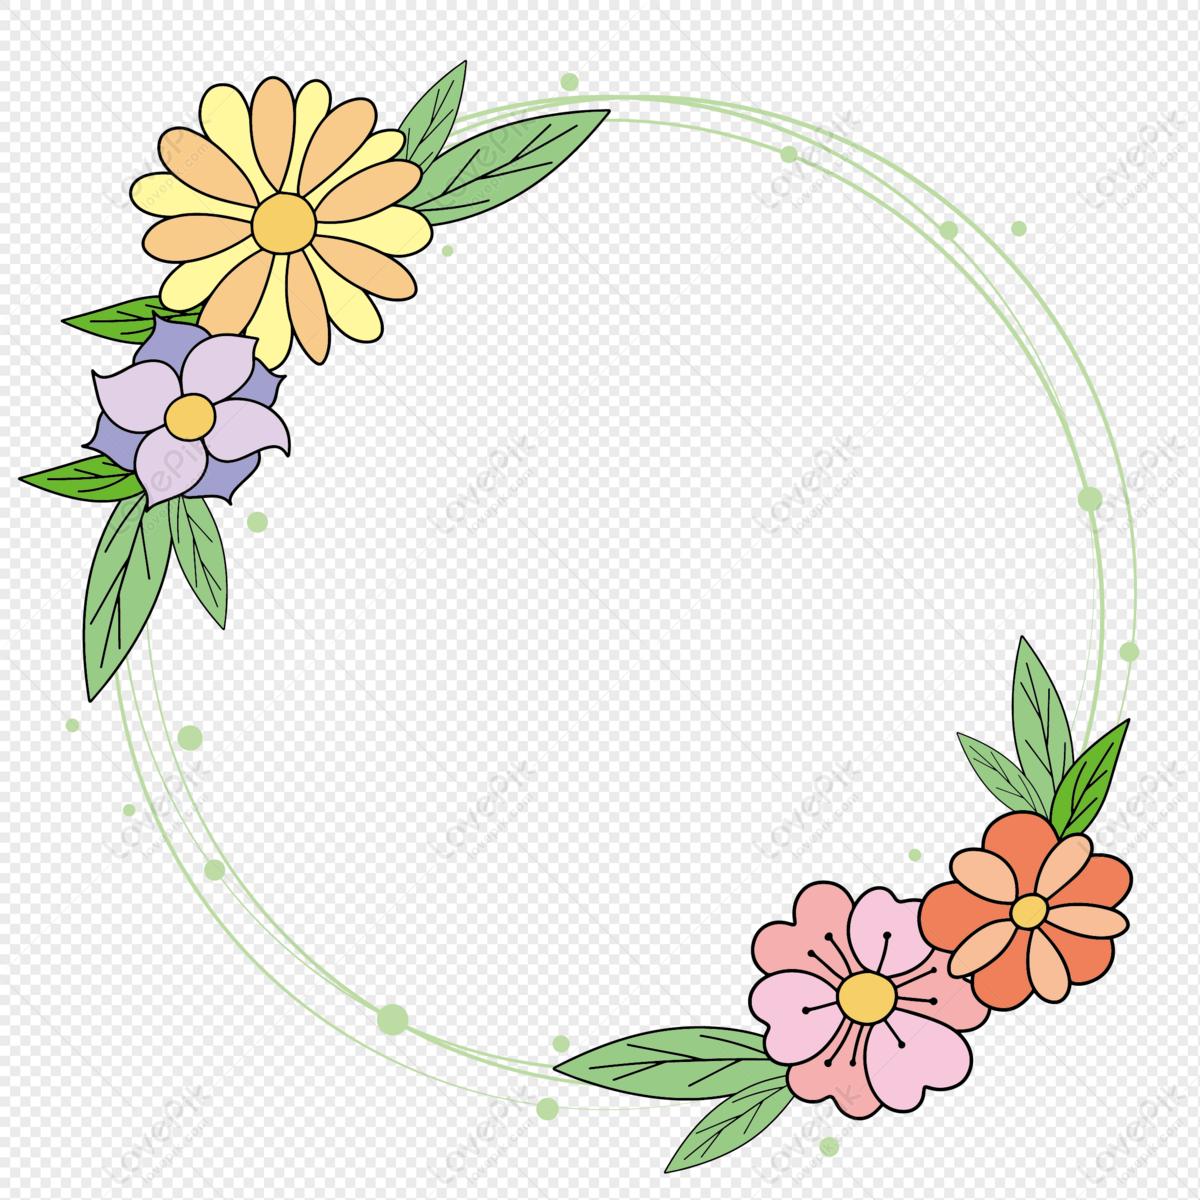 vector flower border design